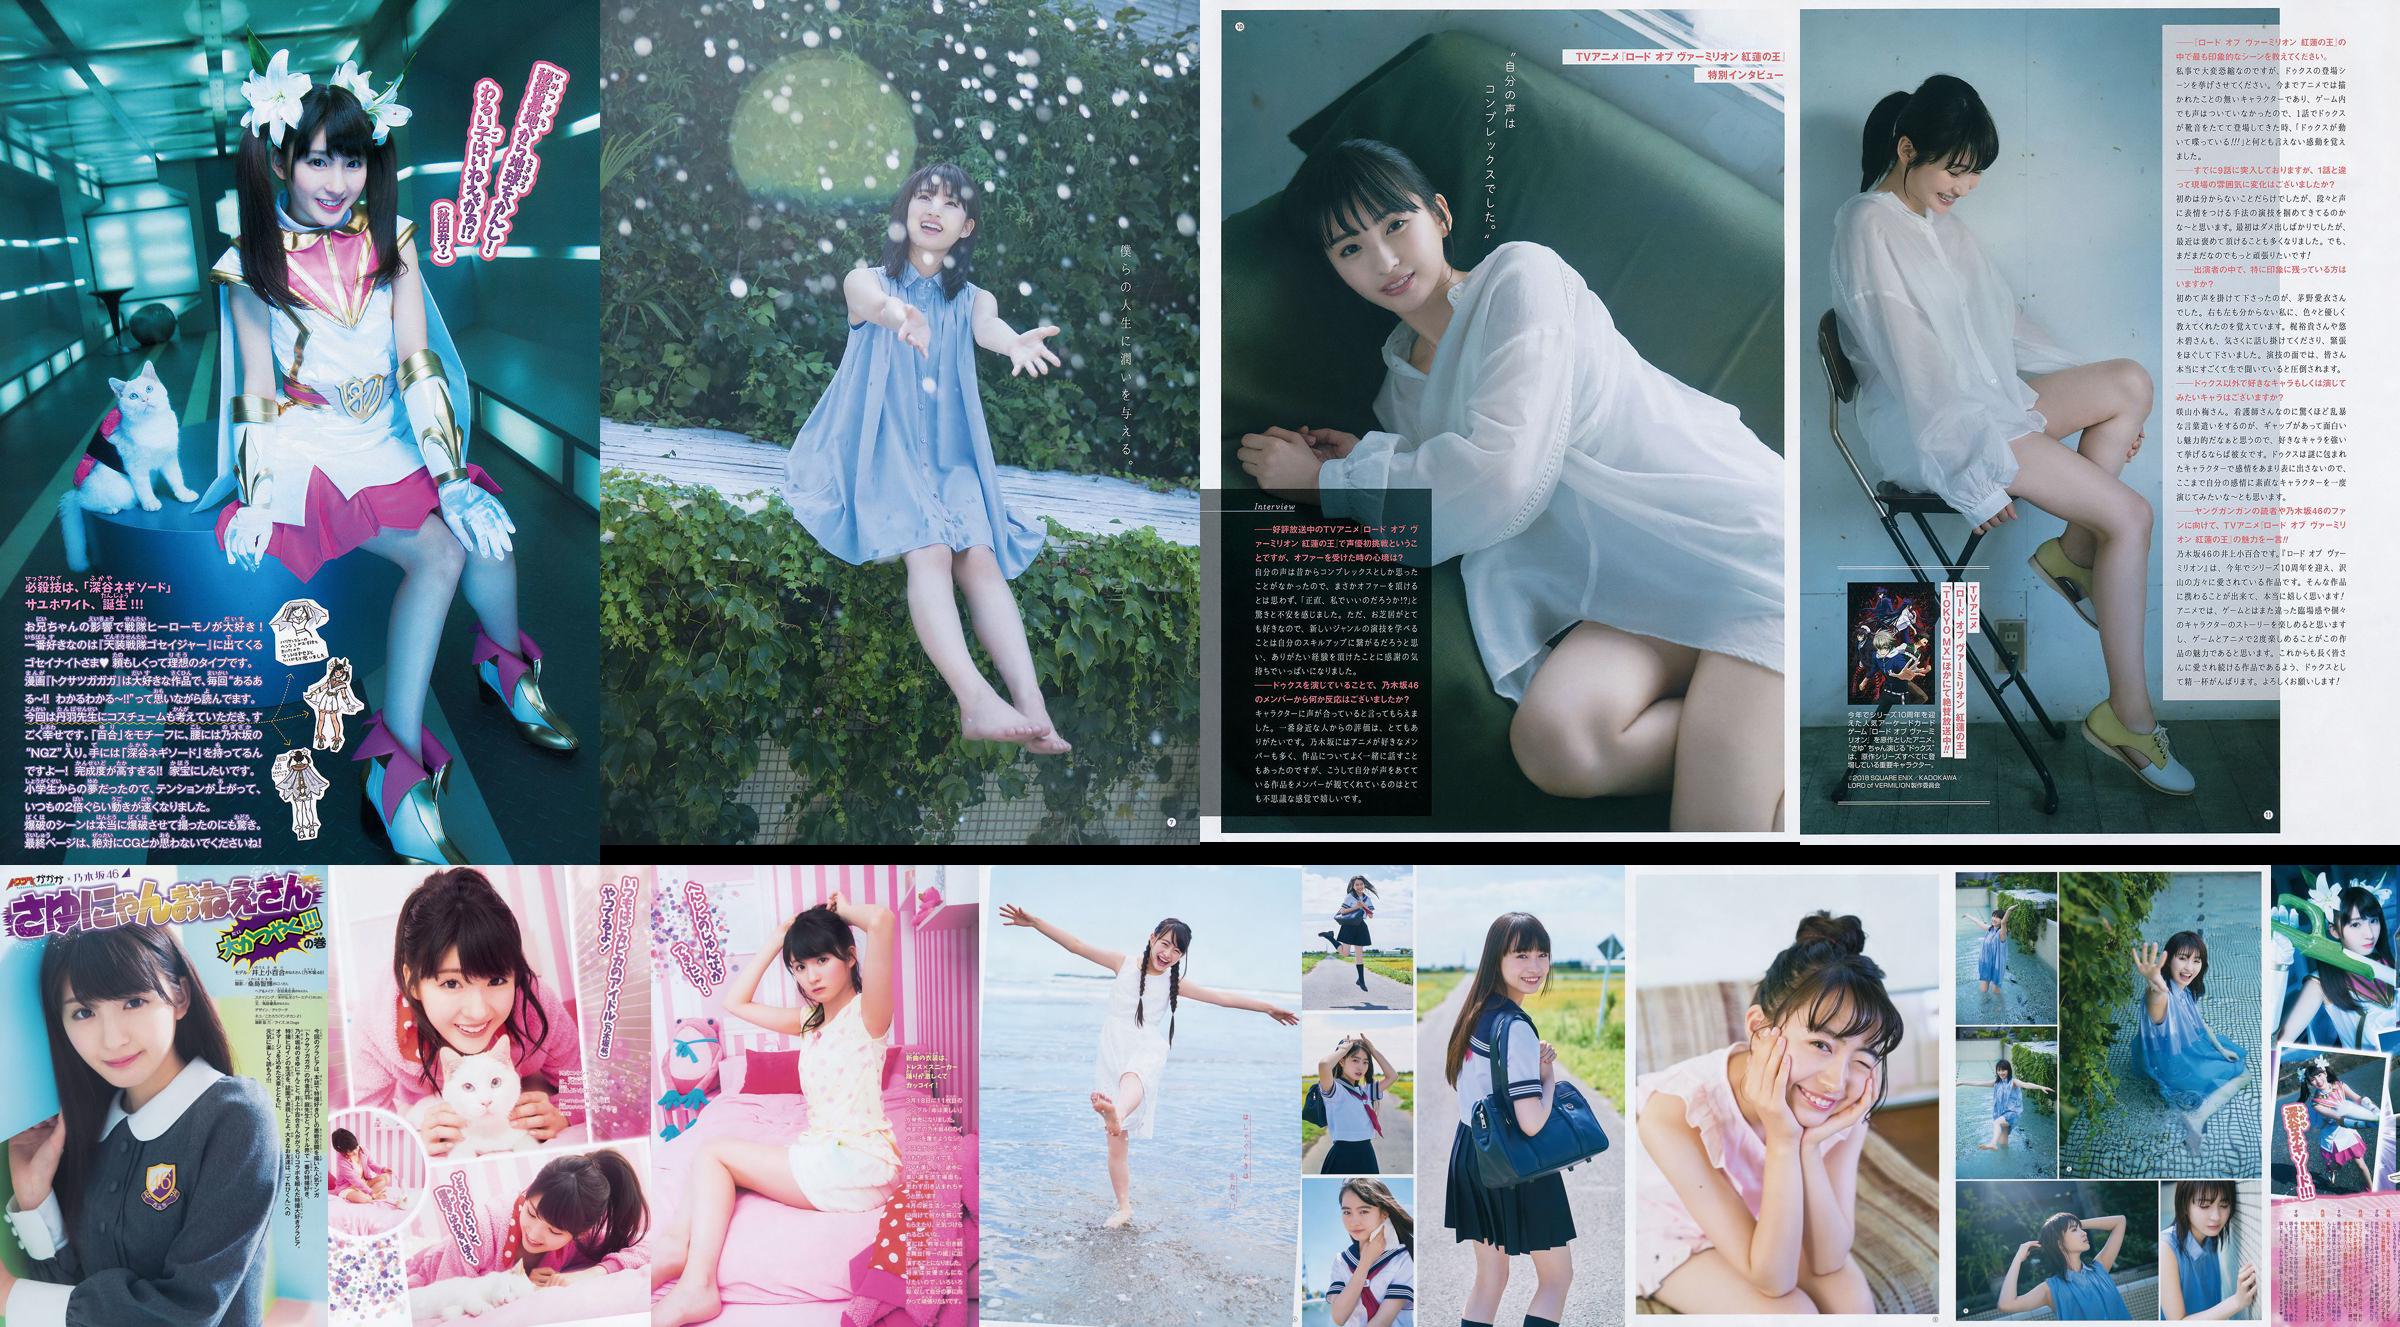 [Young Gangan] Sayuri Inoue Het originele zand 2018 No.18 Photo Magazine No.3f22fd Pagina 1